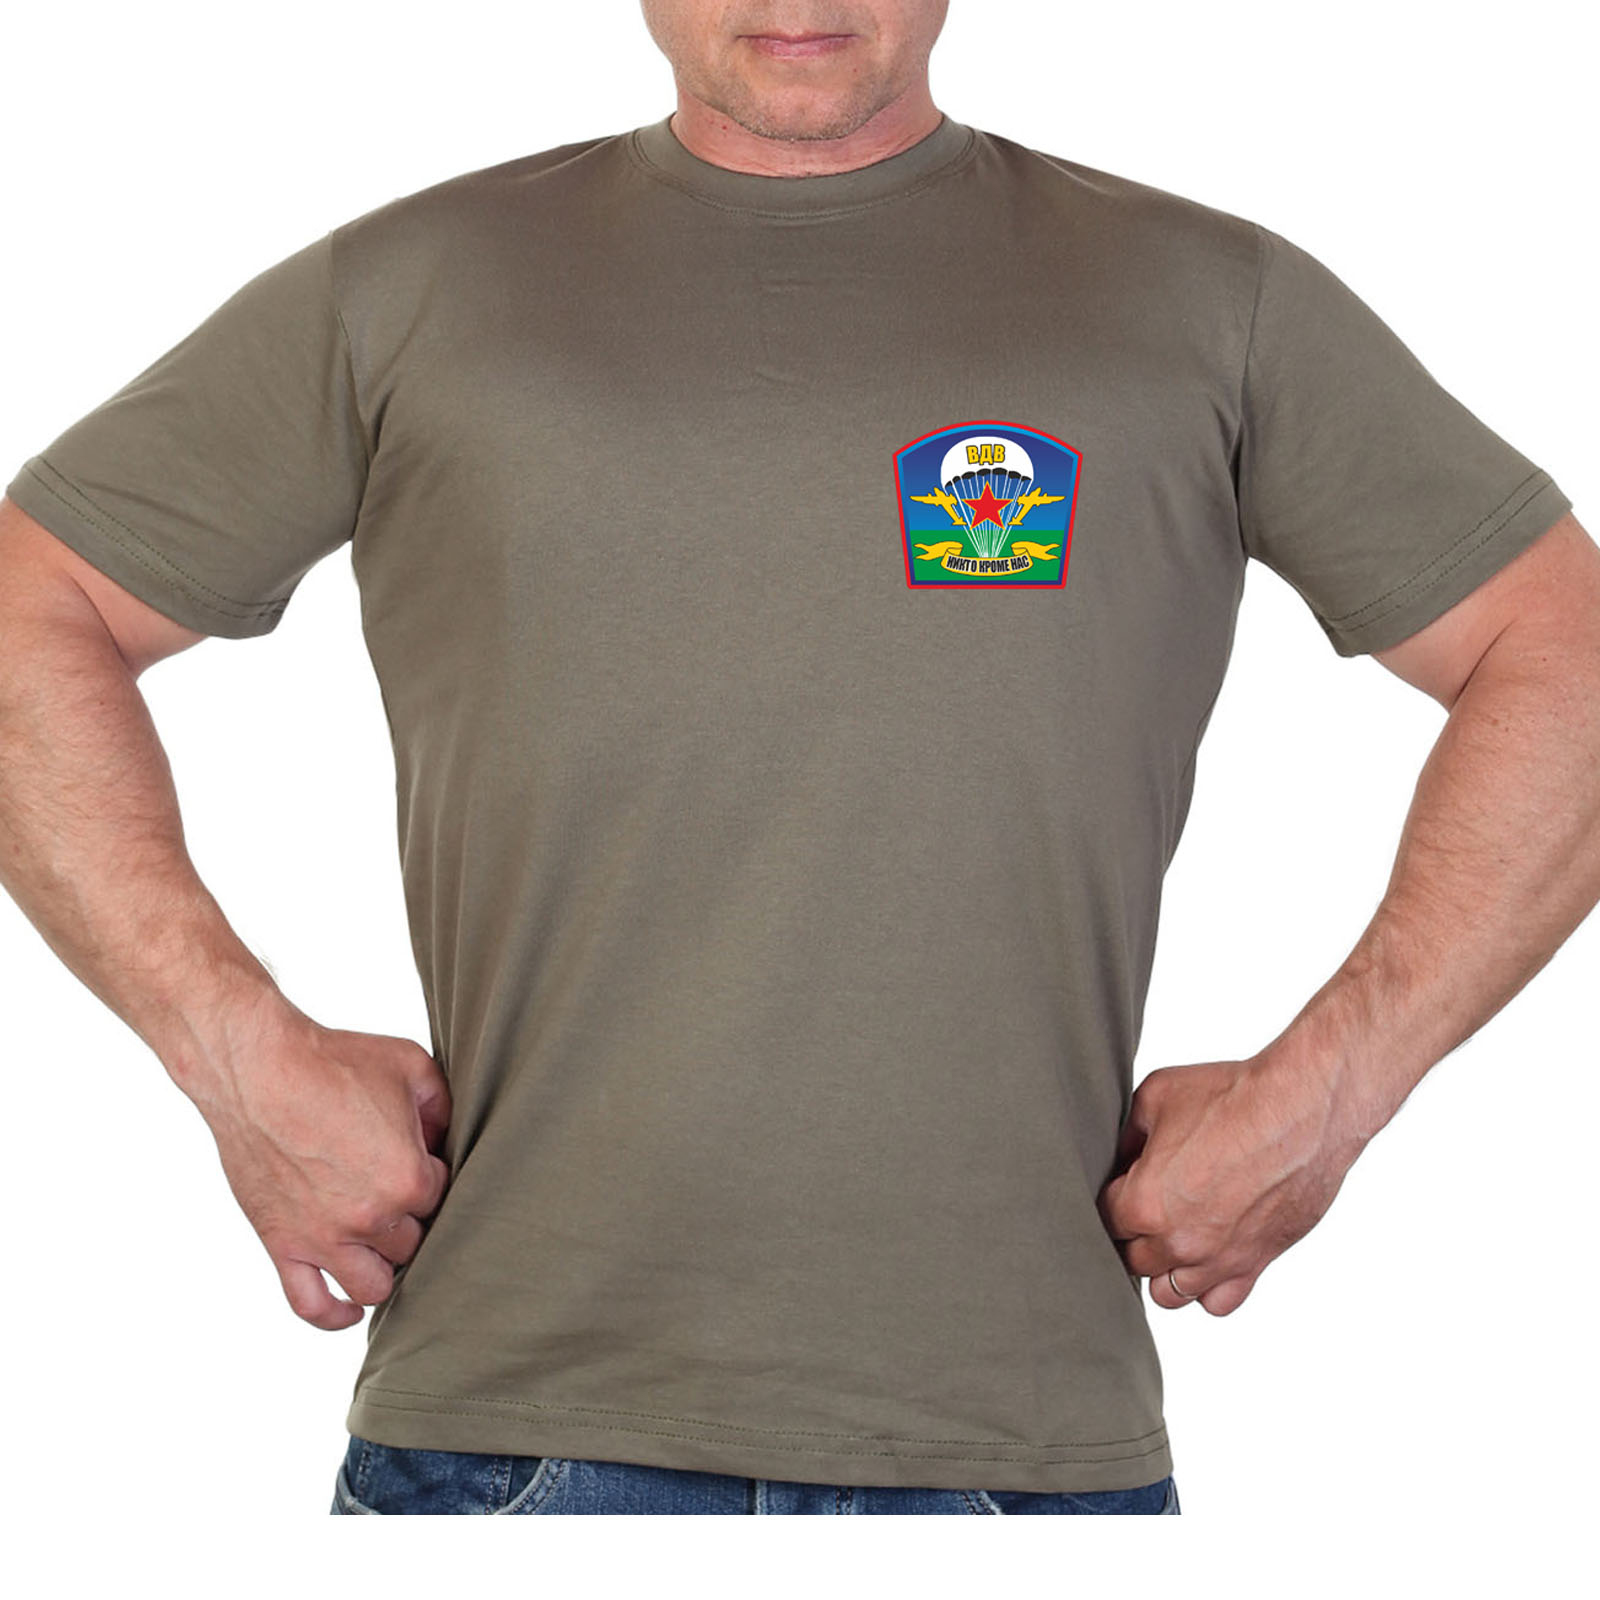 Оливковая футболка с десантным термотрансфером